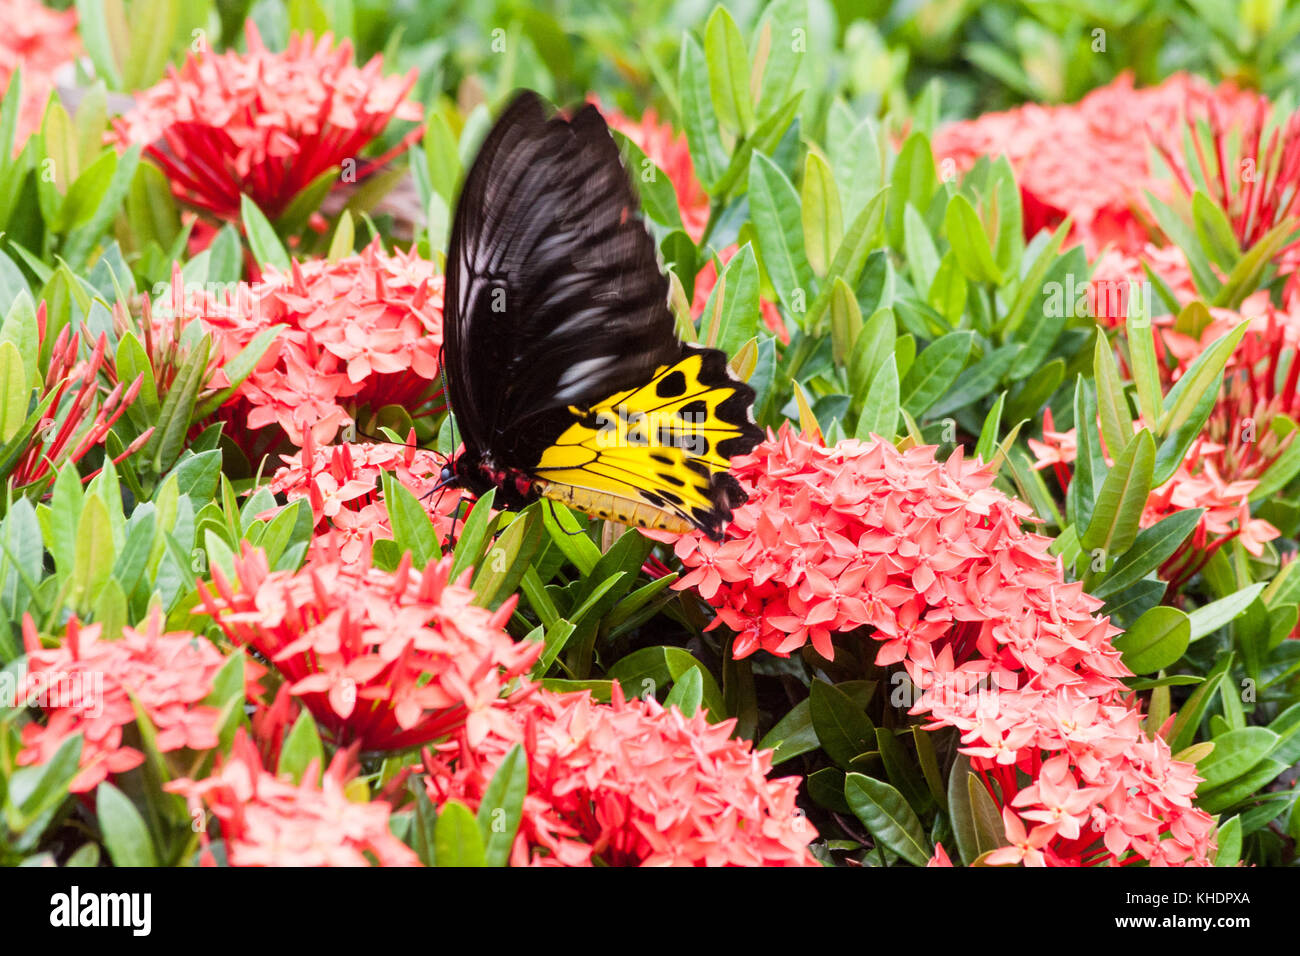 Las mariposas de ala de pájaro común, troides helena tomando el néctar de las flores de la ixora coccinea Foto de stock